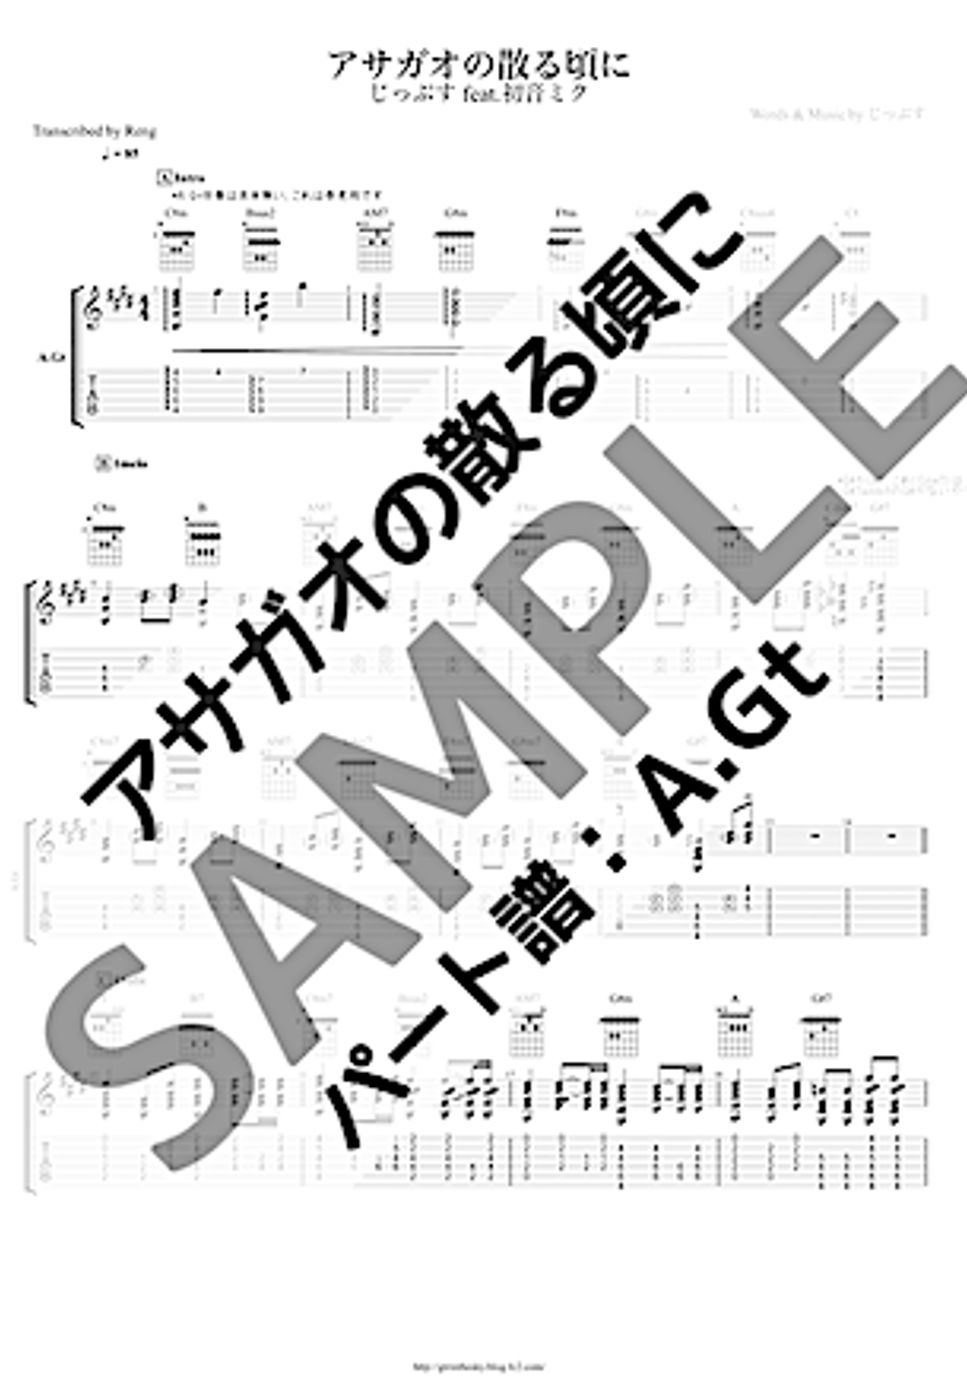 じっぷす - アサガオの散る頃に (A.Gtパート / ボカロ / VOCALOID曲) by Reng